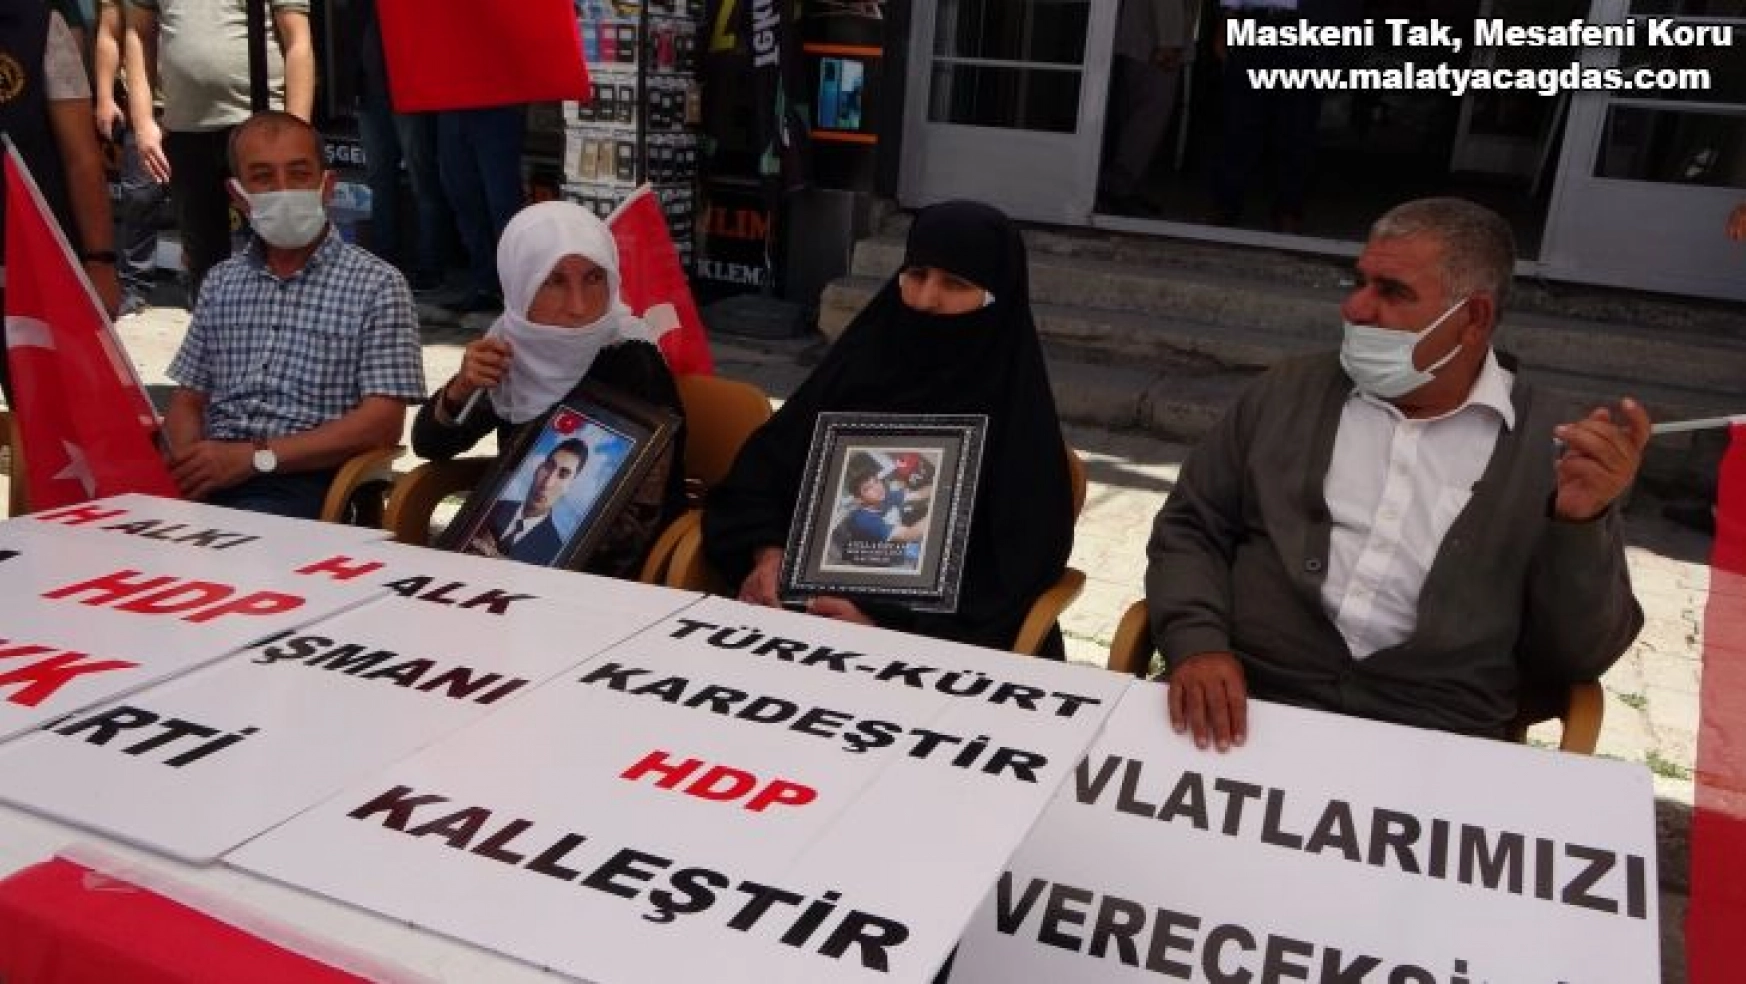 Muşlu annelerin HDP önündeki eylemi sürüyor